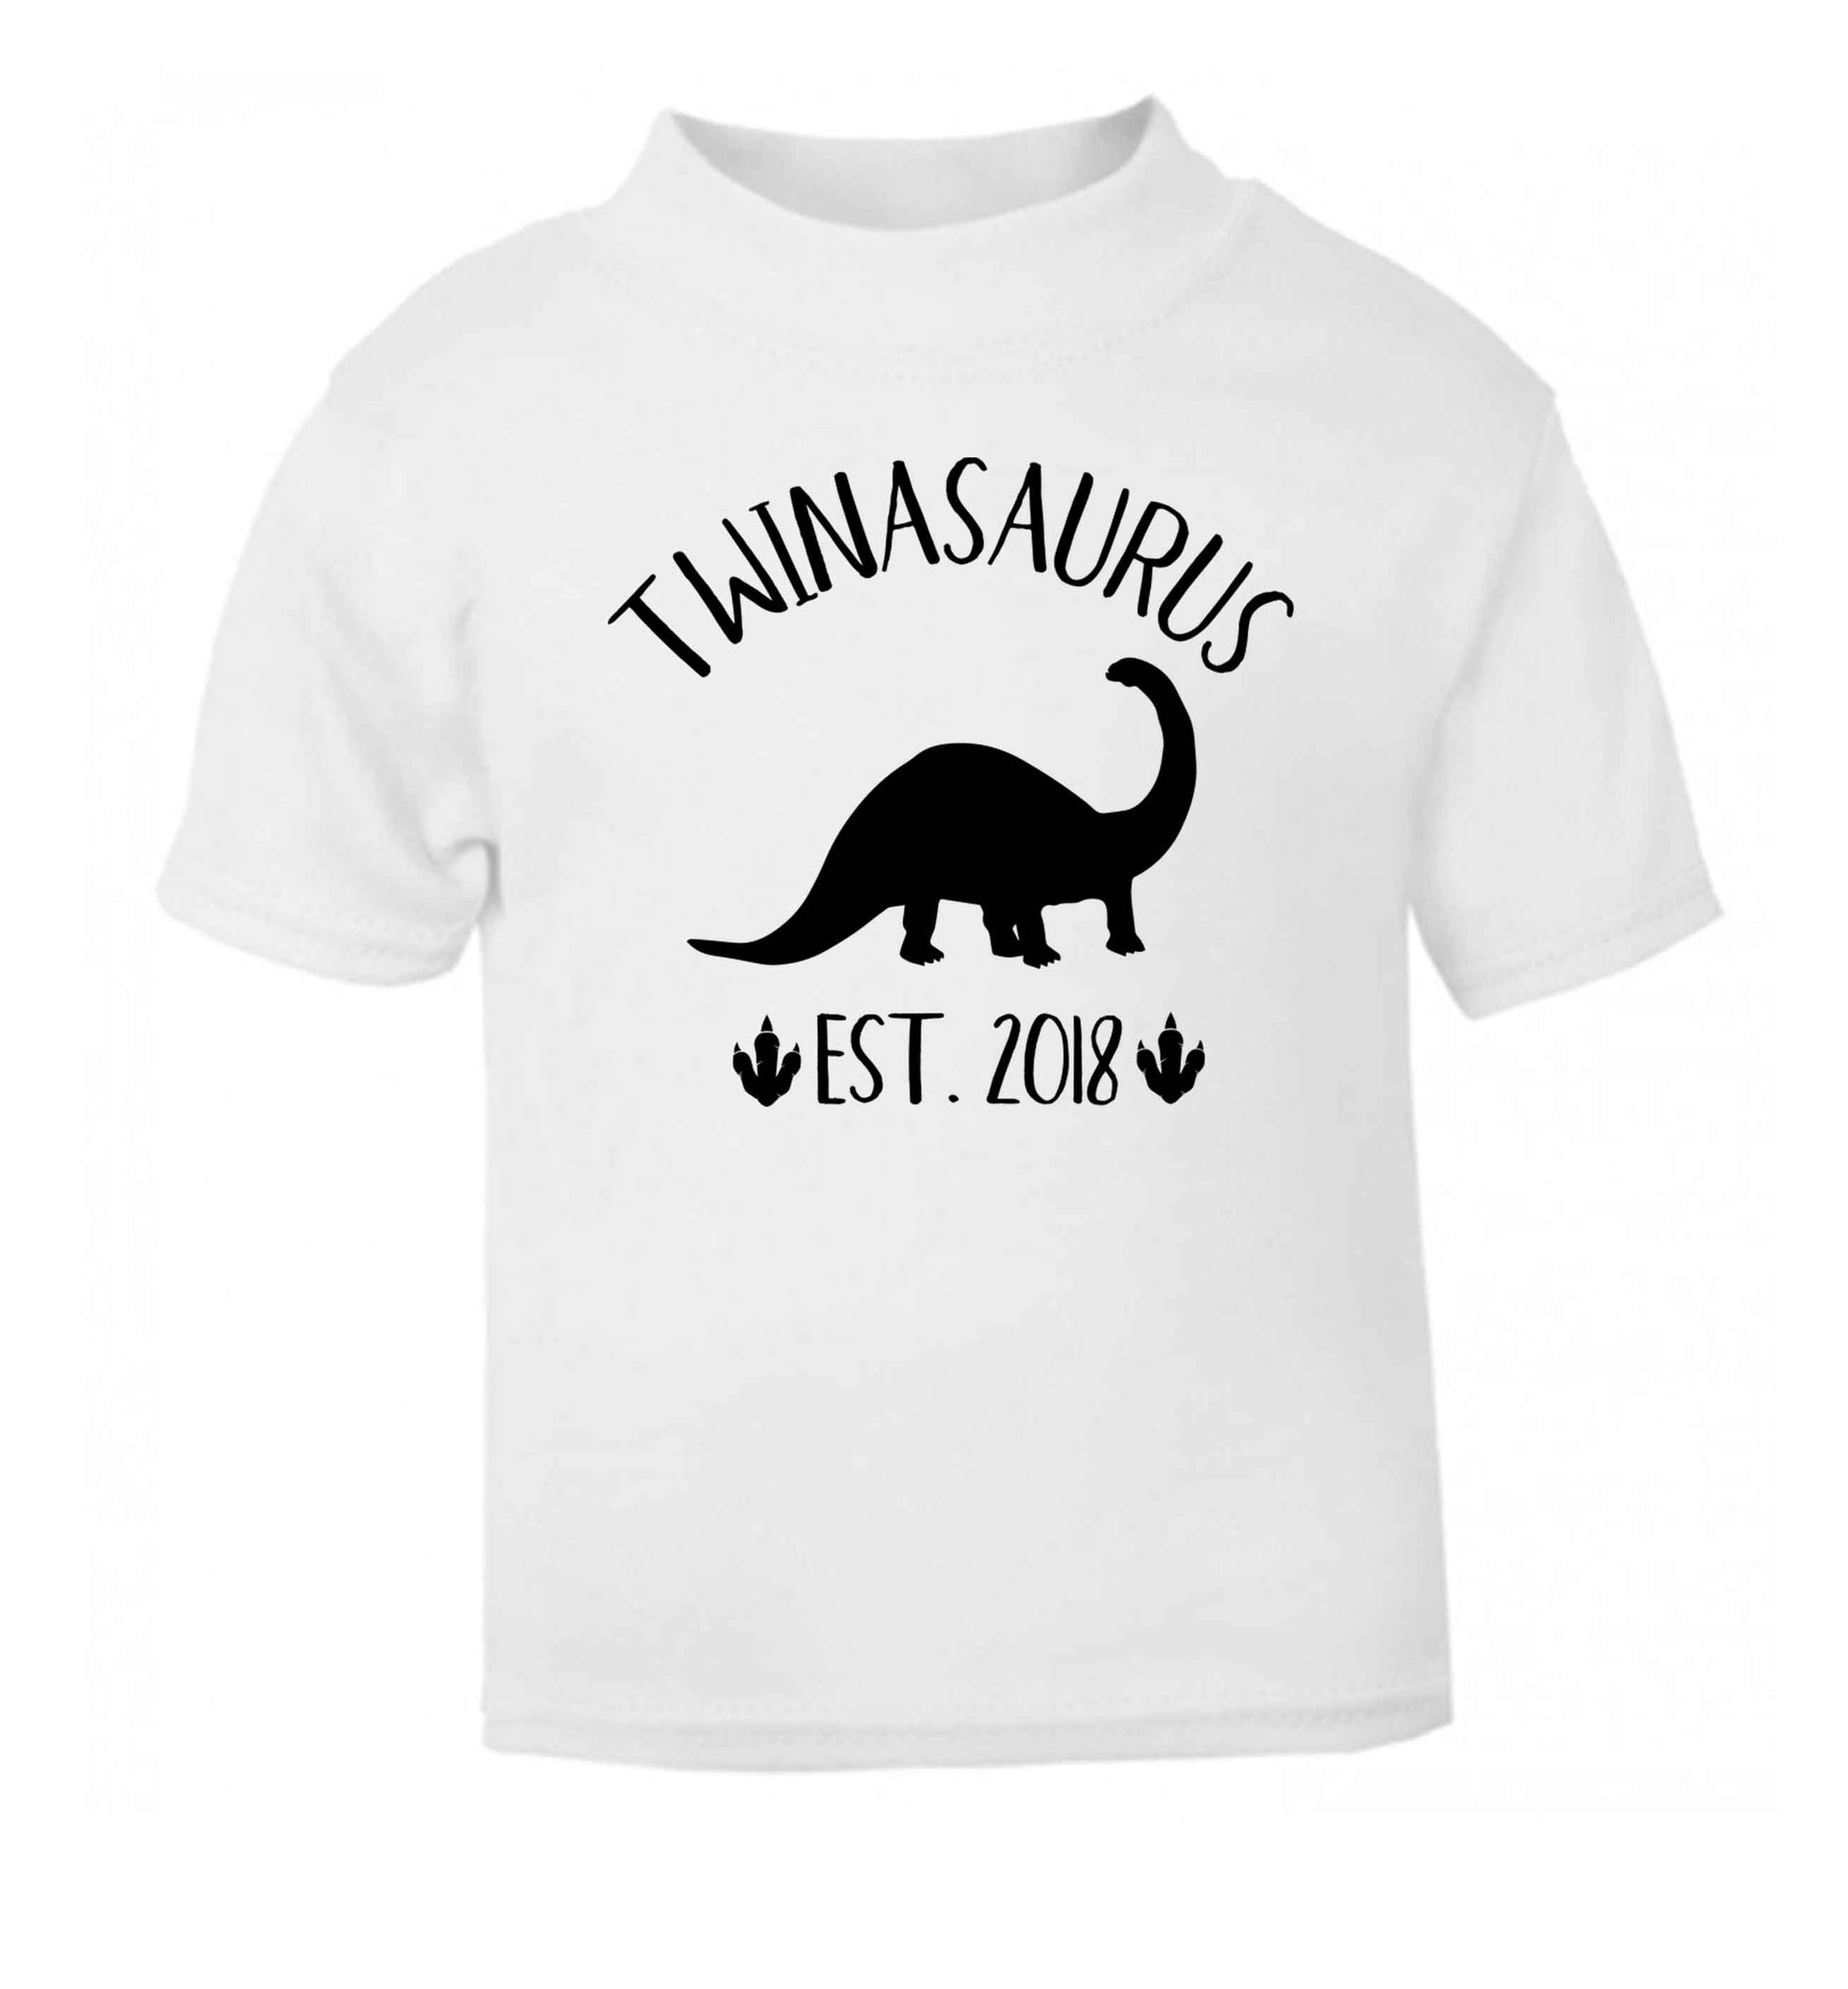 Personalised twinasaurus since (custom date) white Baby Toddler Tshirt 2 Years